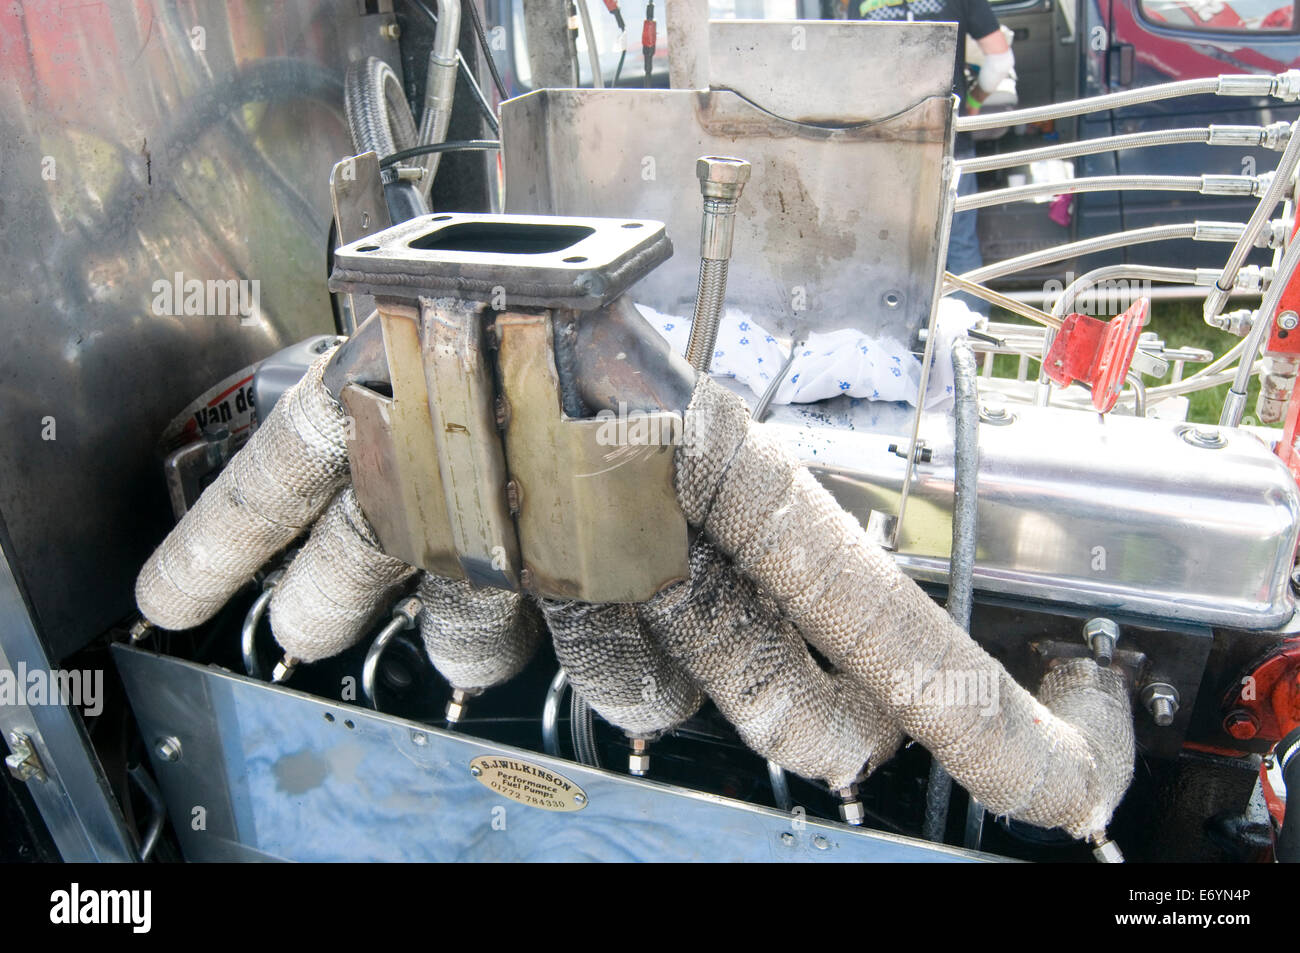 Moteur d'échappement collecteur moteurs turbo tuebocharged enveloppé de chaleur sur les tuyaux tuyau diesel diesel Banque D'Images